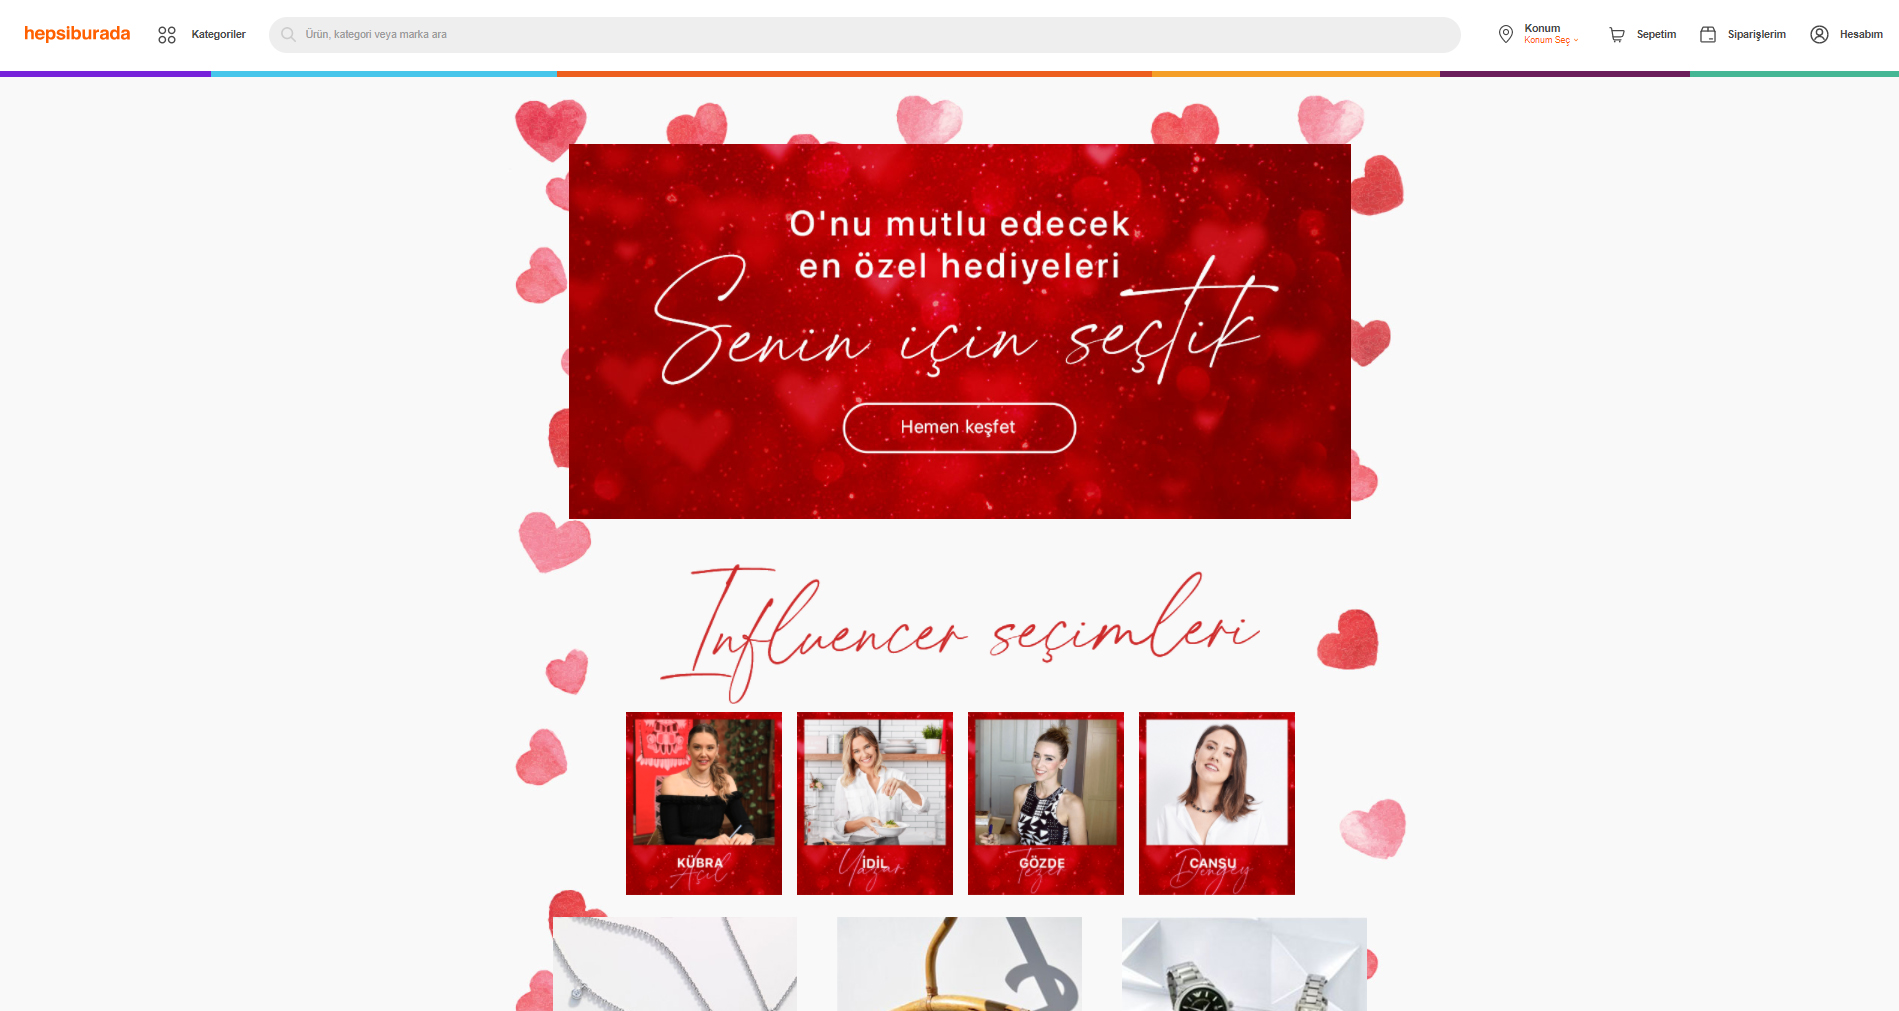 Sevgililer günü telefon kampanyaları 2022 | 14 şubat MediaMarkt, Vatan Bilgisayar, Hepsiburada